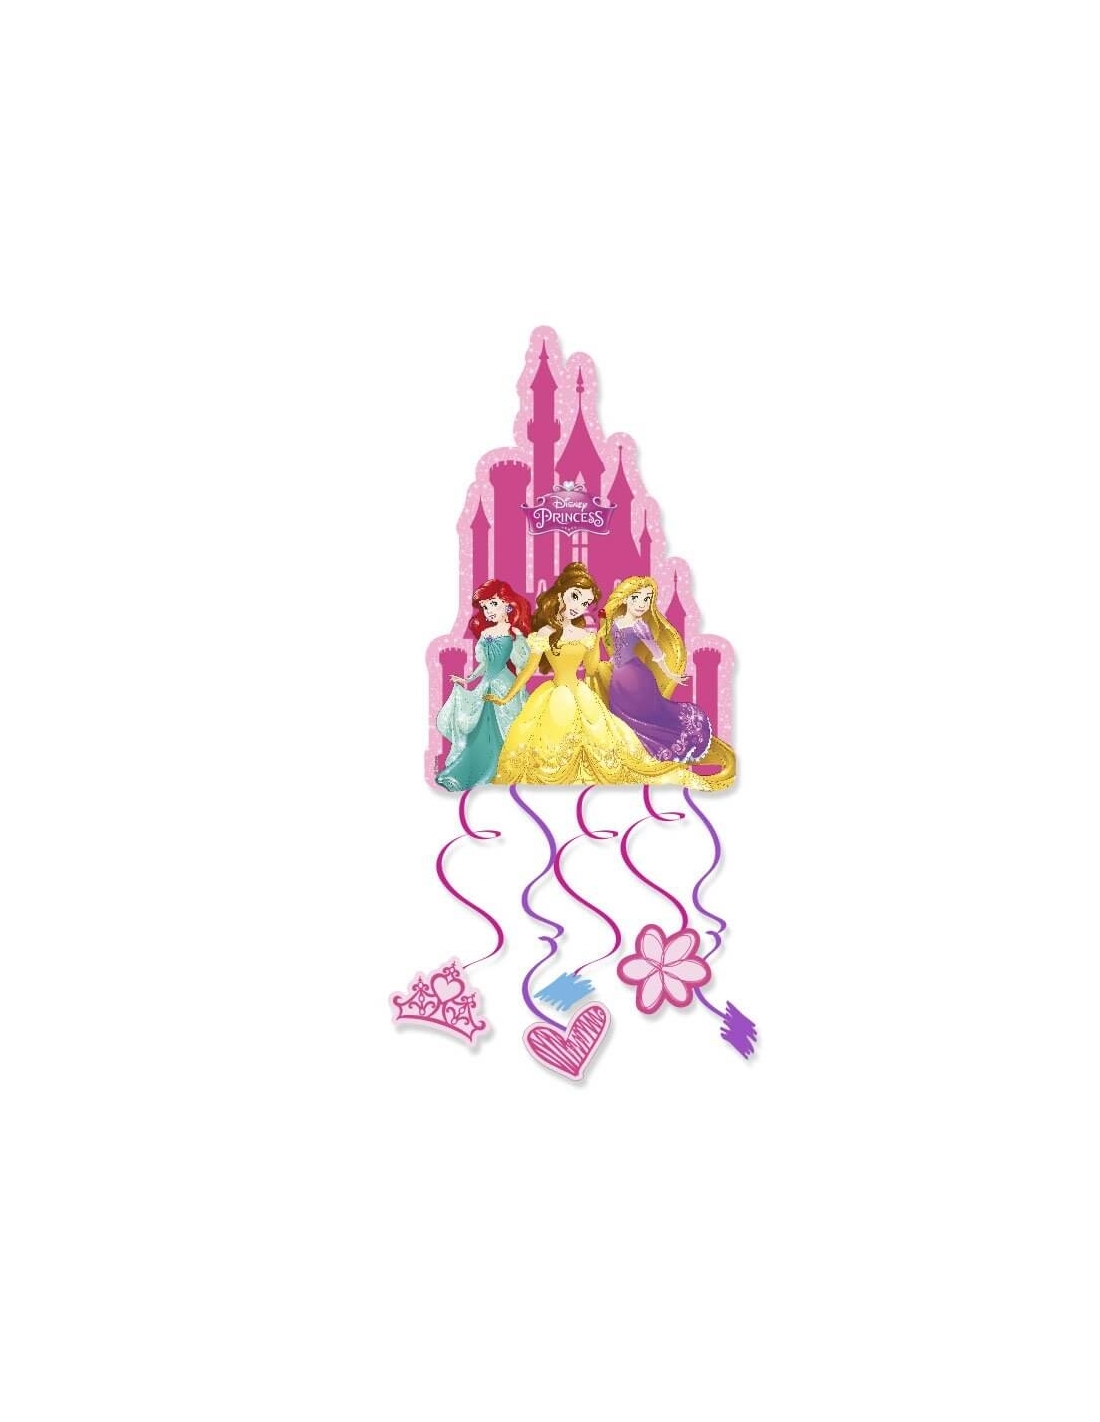 Piñata Princesas Disney para Fiestas y Cumpleaños